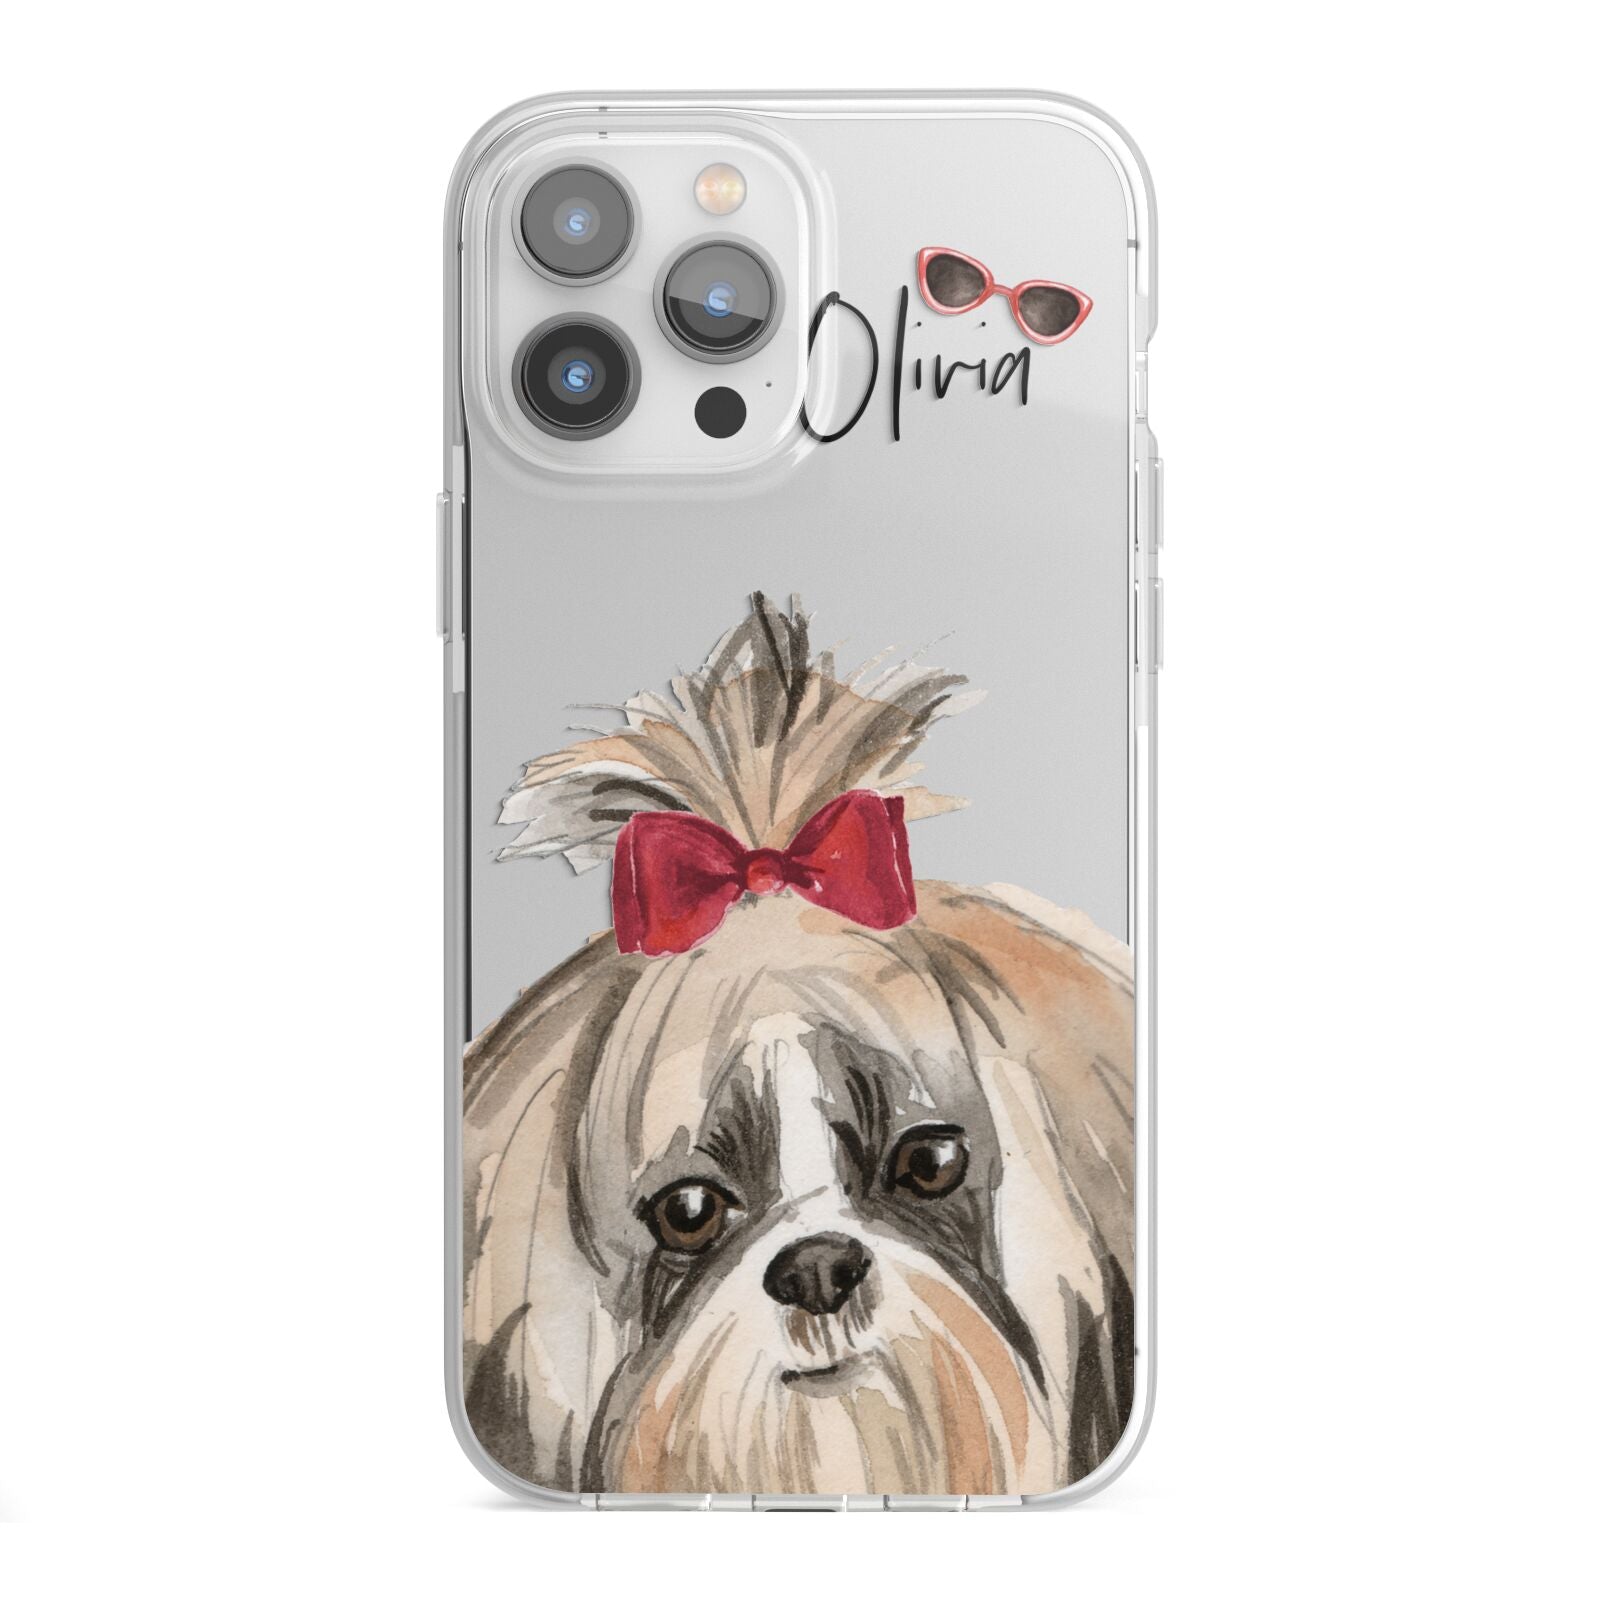 Personalised Shih Tzu Dog iPhone 13 Pro Max TPU Impact Case with White Edges